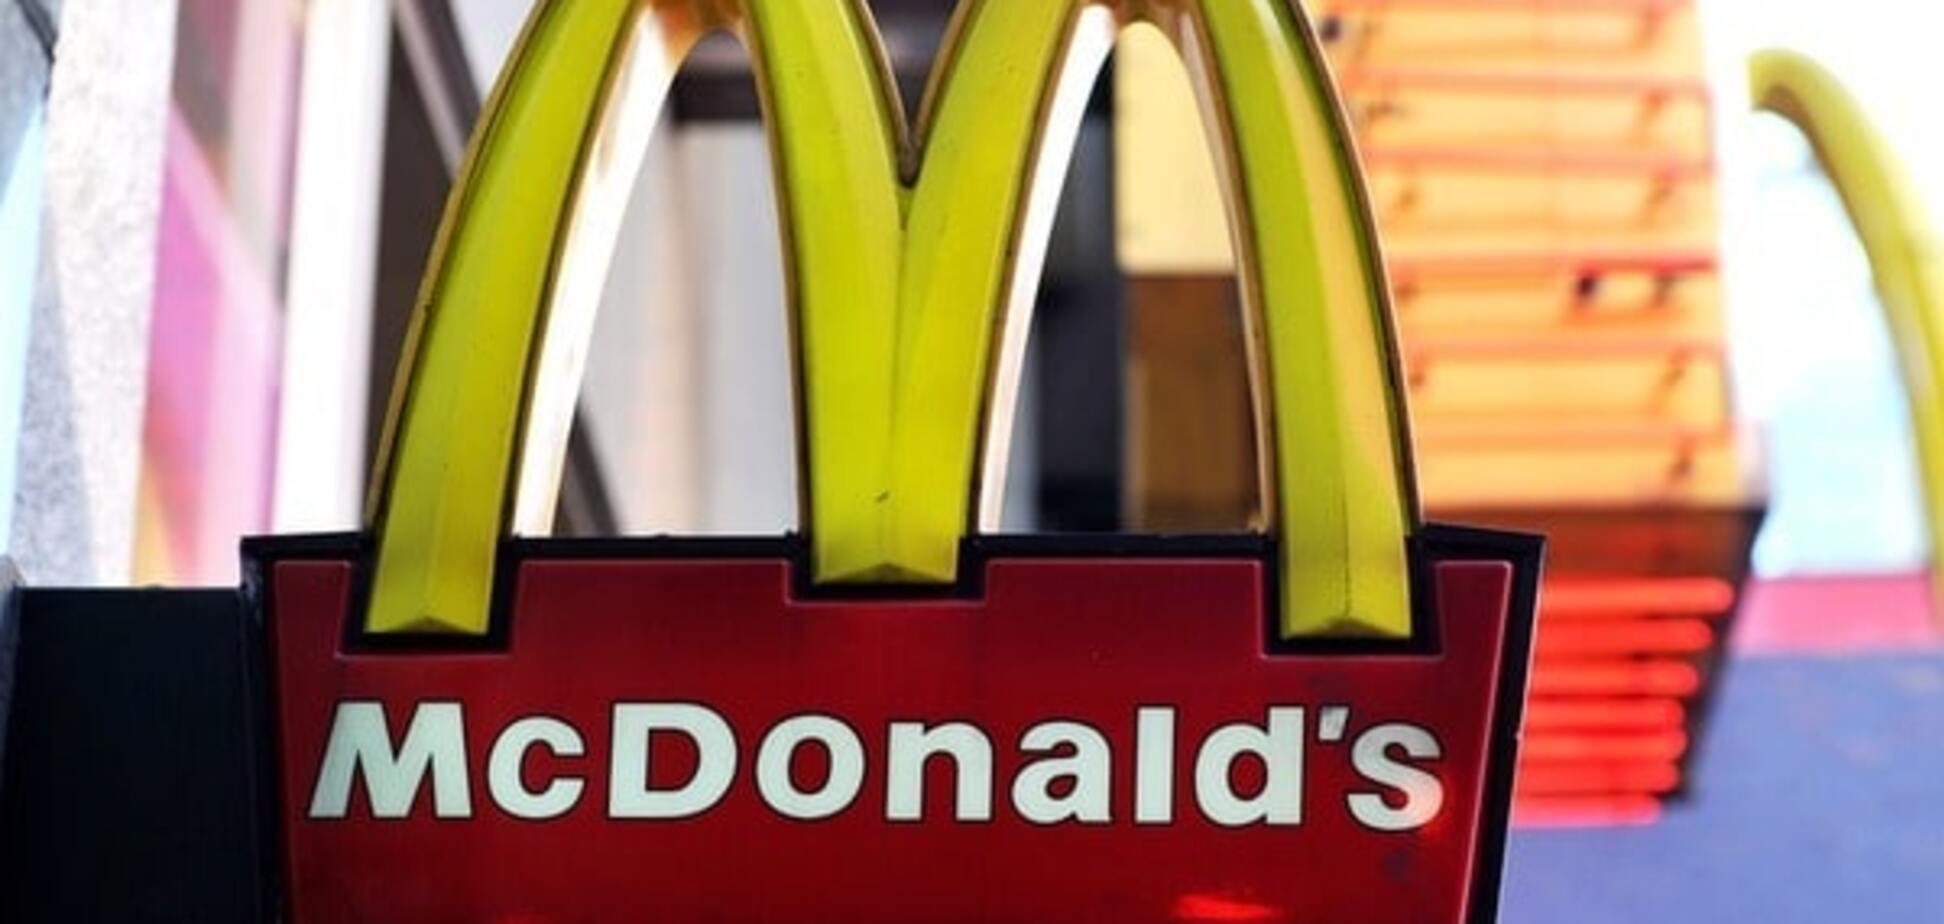 Затяните пояса потуже: закрылся самый большой в мире McDonald's